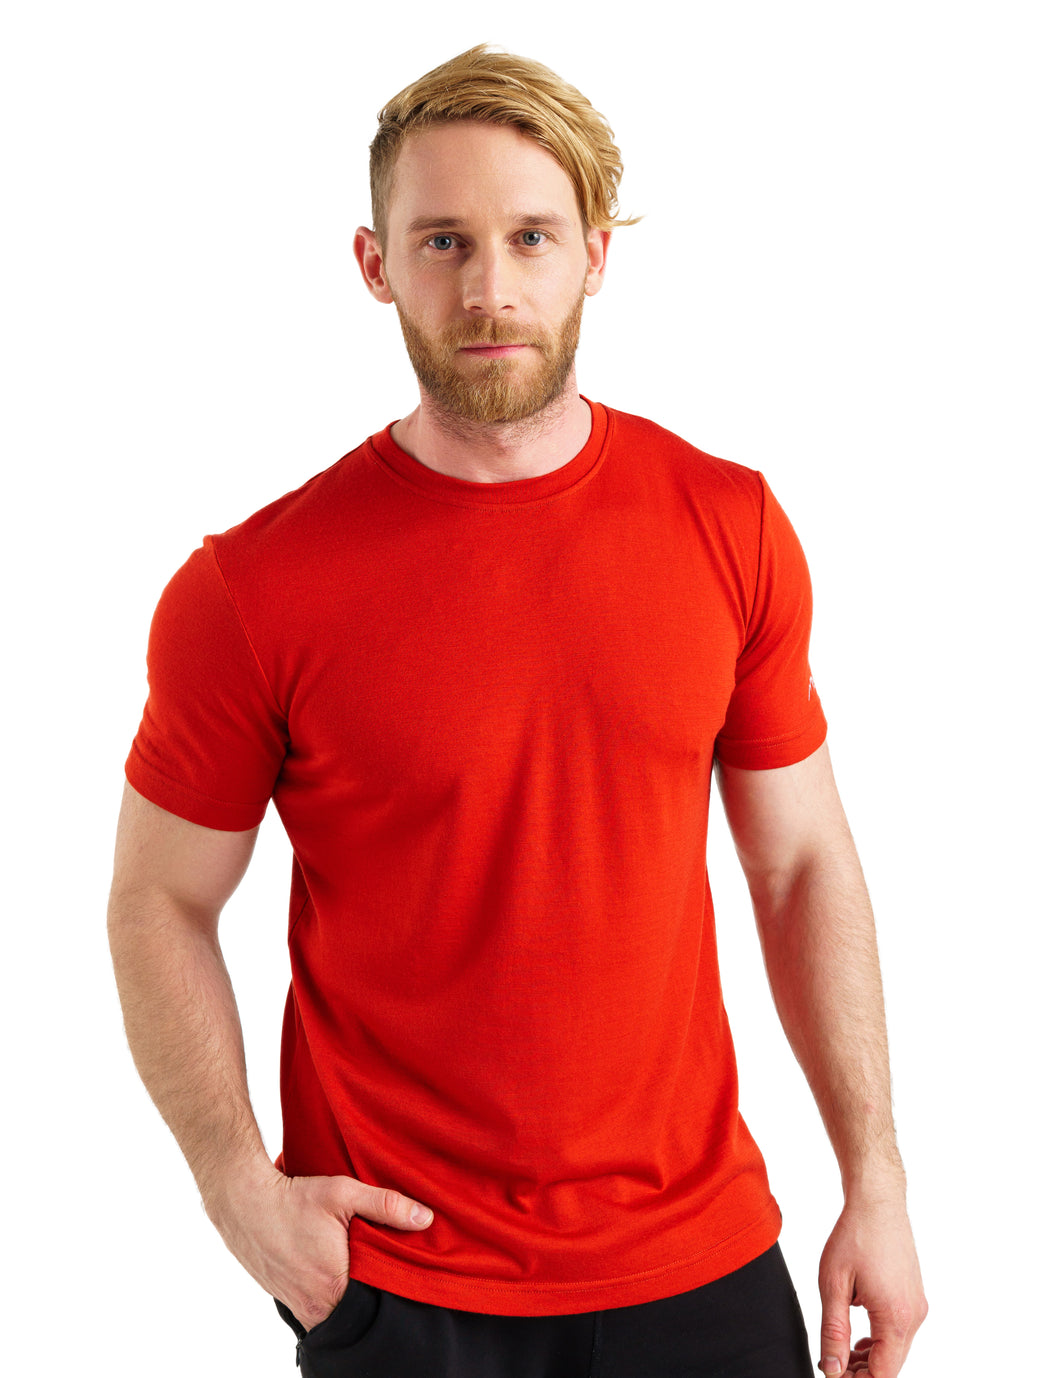 Men's Merino T-shirt 165 Chili Red